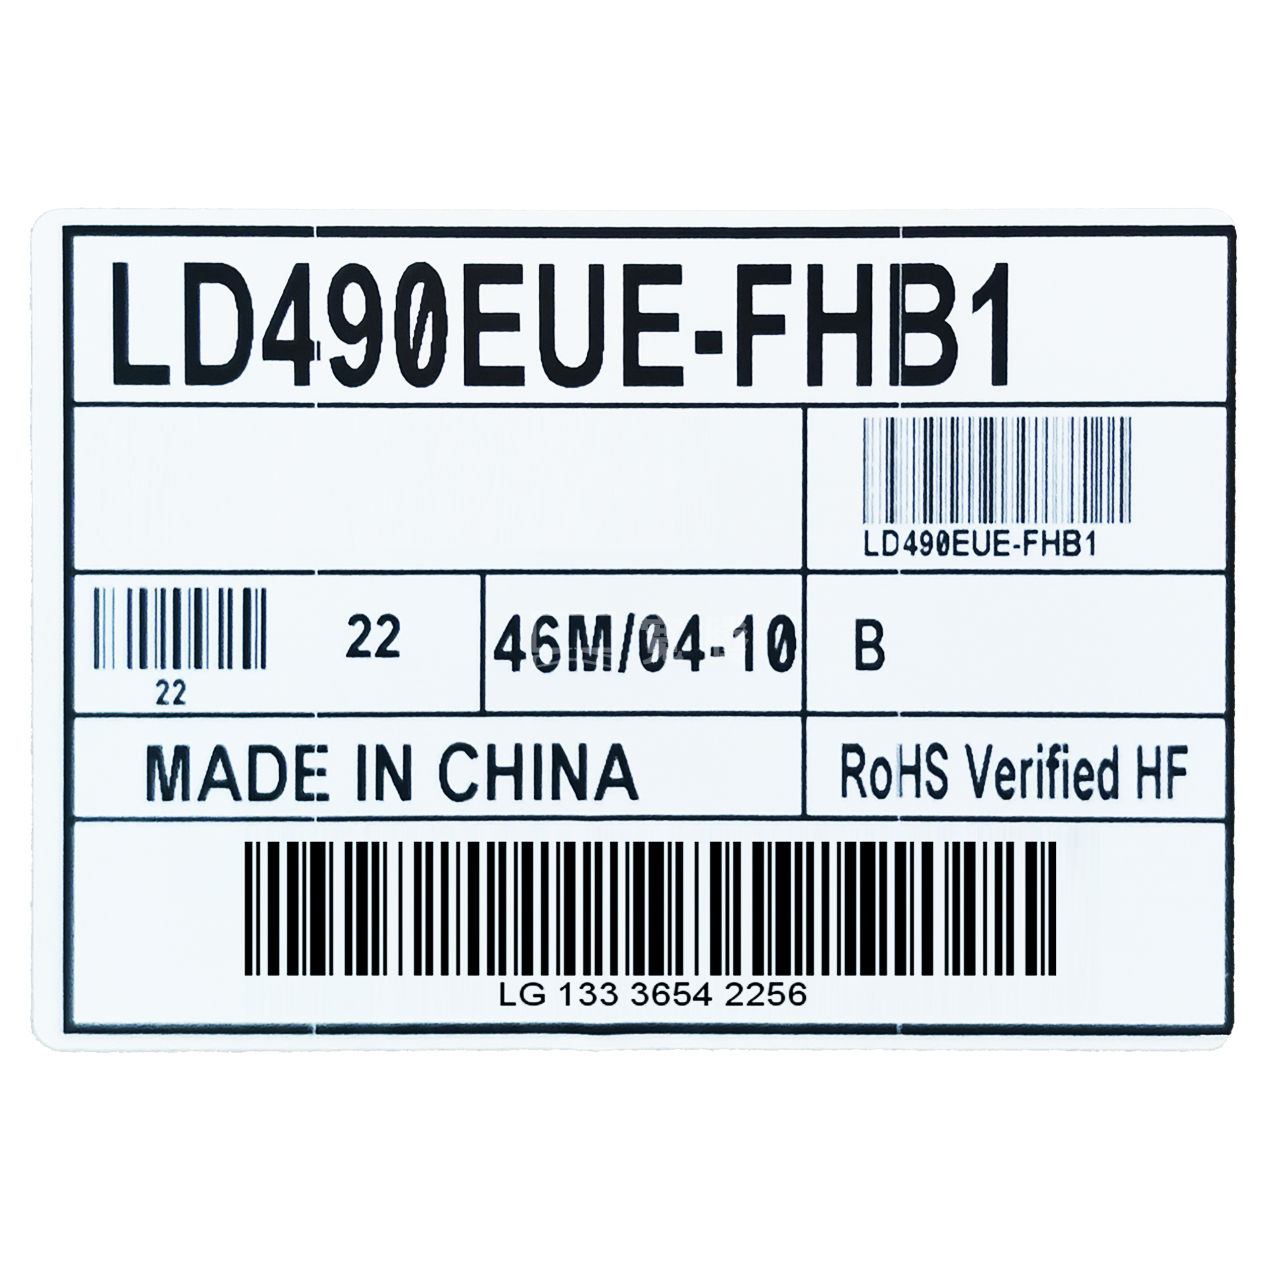 LD490EUE-FHB1